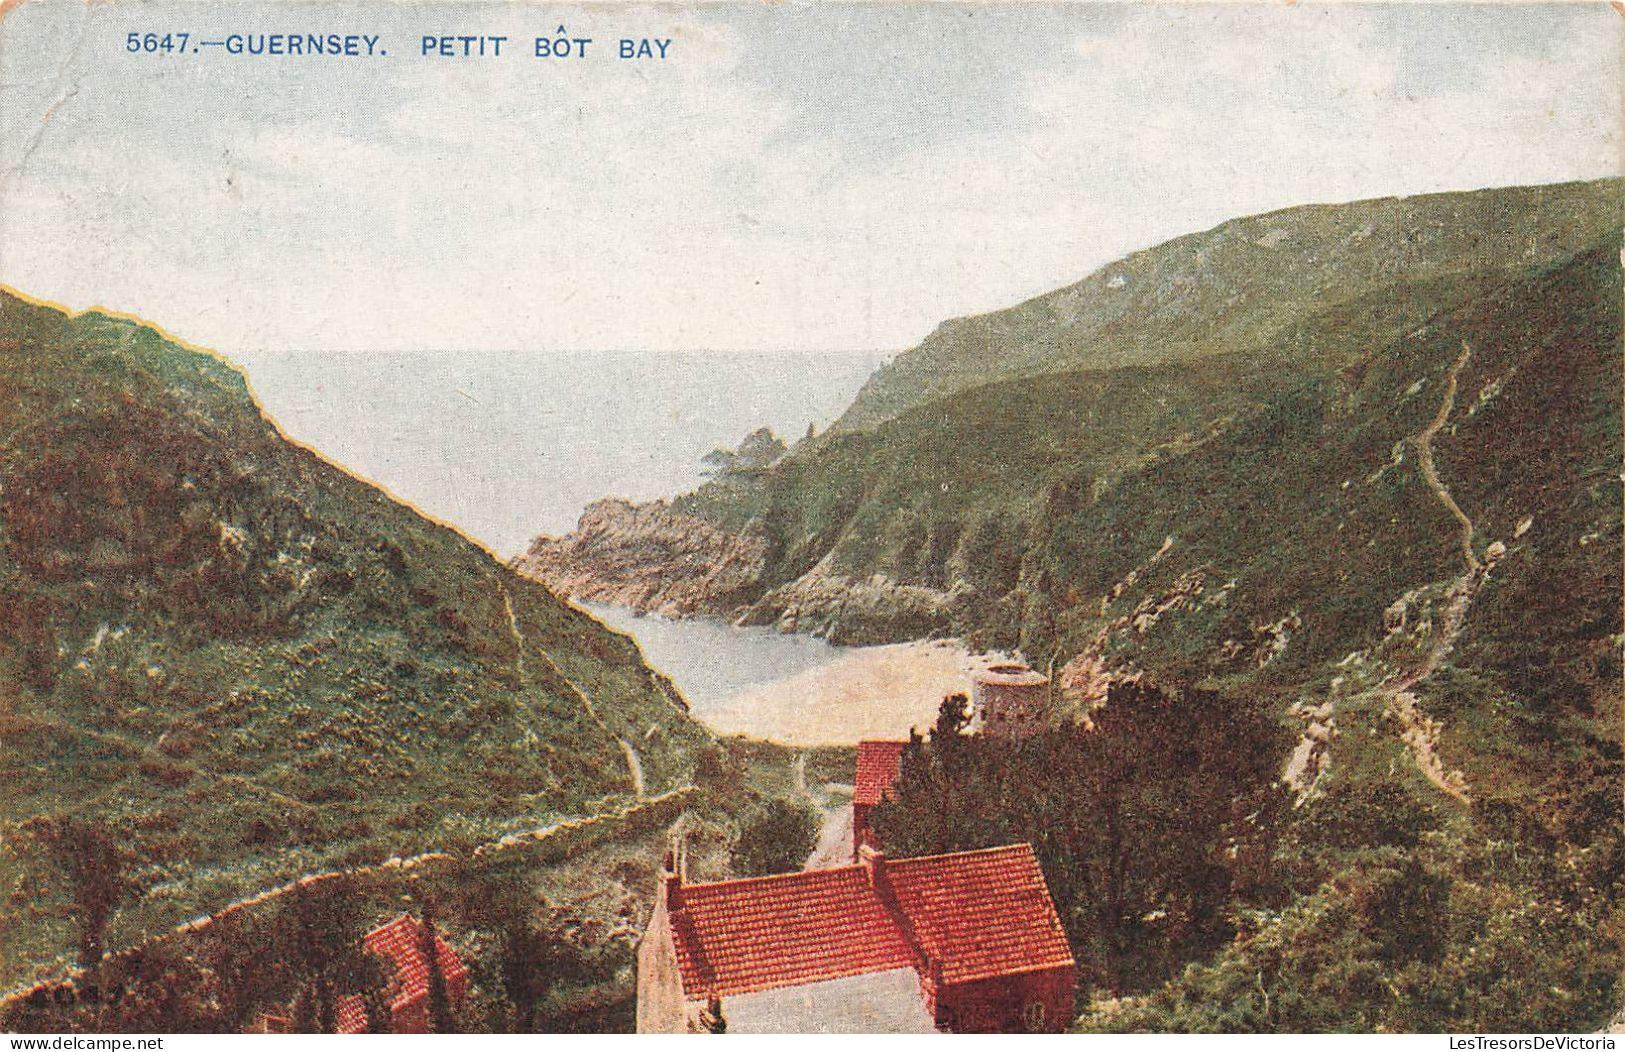 ROYAUME-UNI - Guernsey - Petit Bot Baty - Vue Au Loin De La Mer - Une Maison - Des Collines - Carte Postale Ancienne - Guernsey